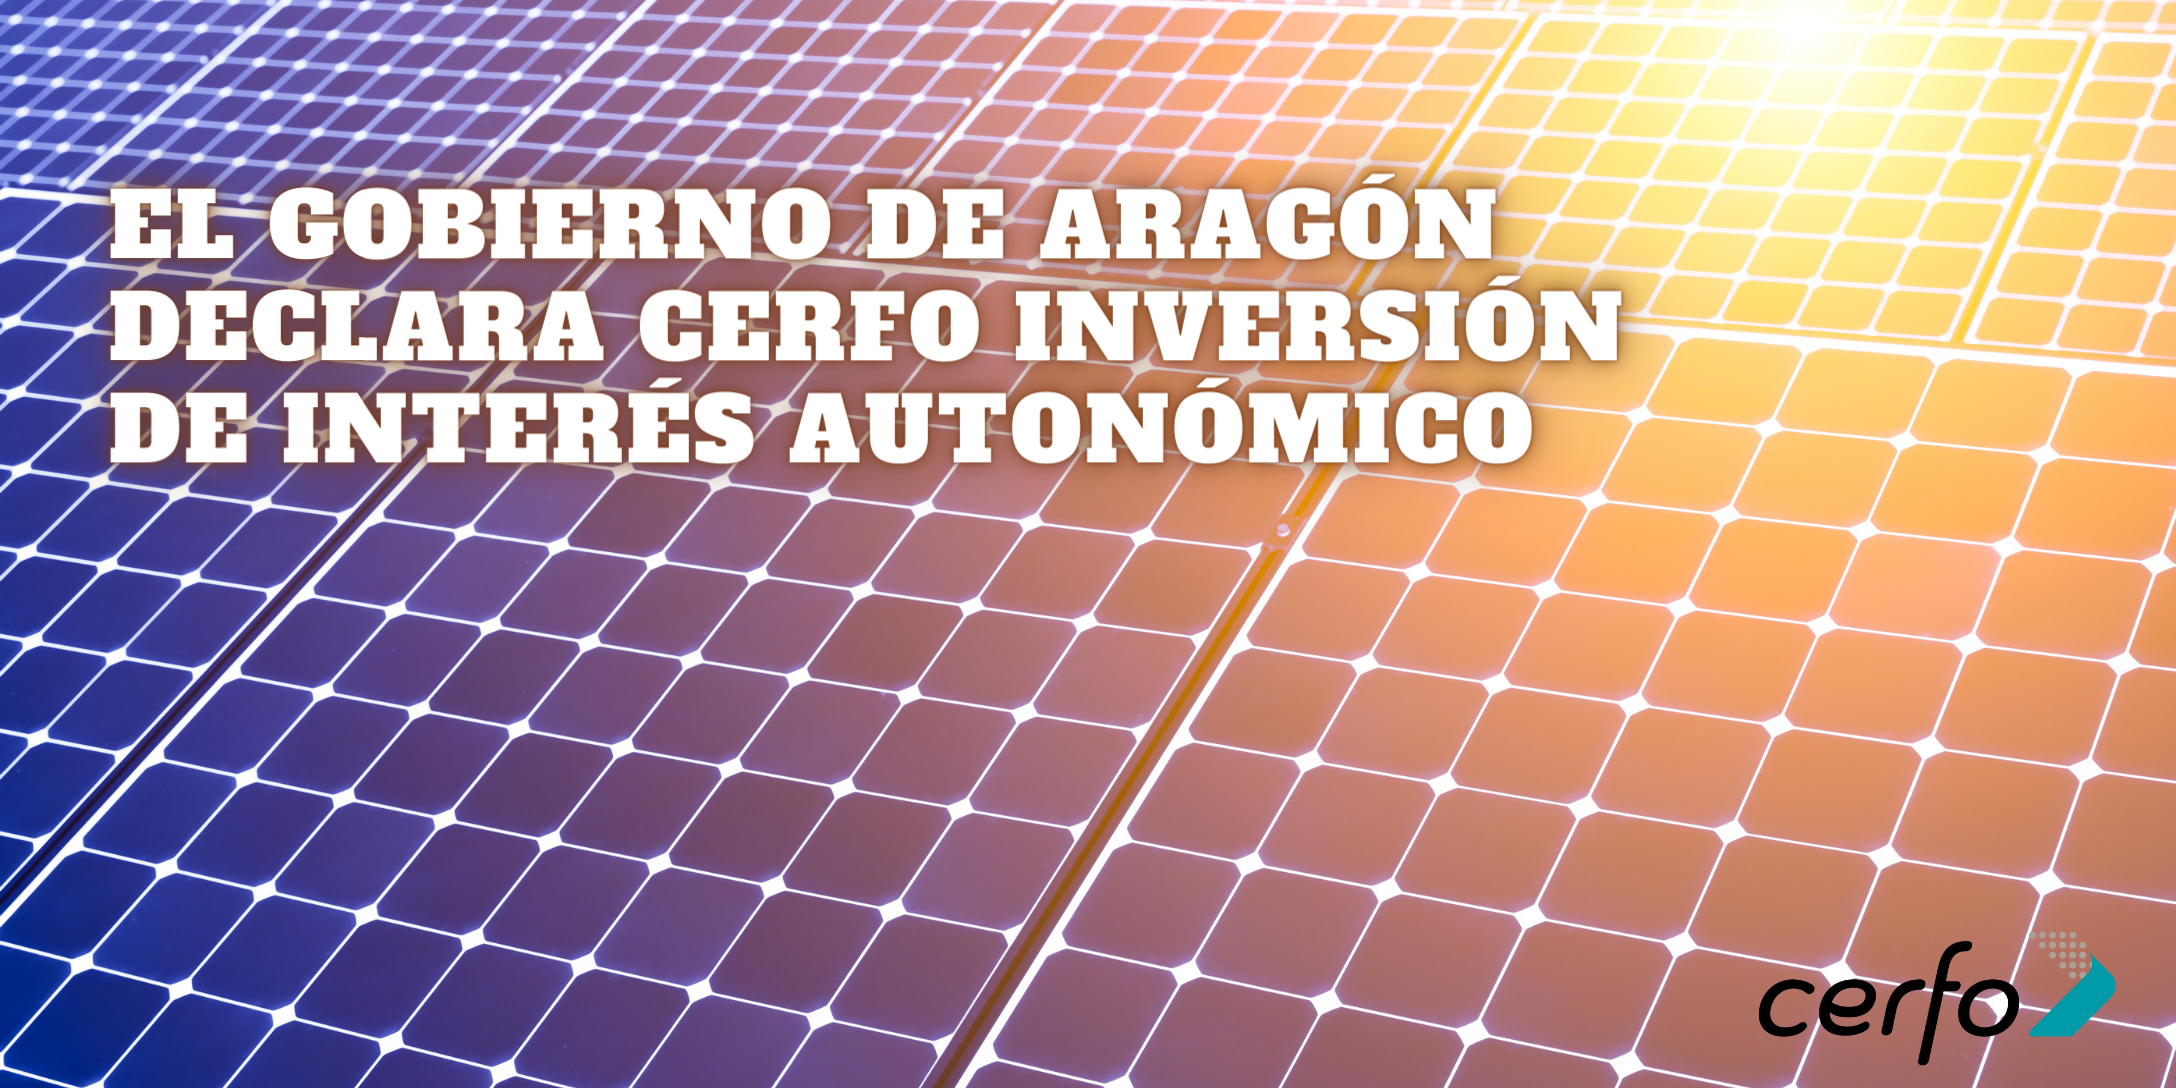 El Gobierno de Aragón declara CERFO inversión de interés autonómico 